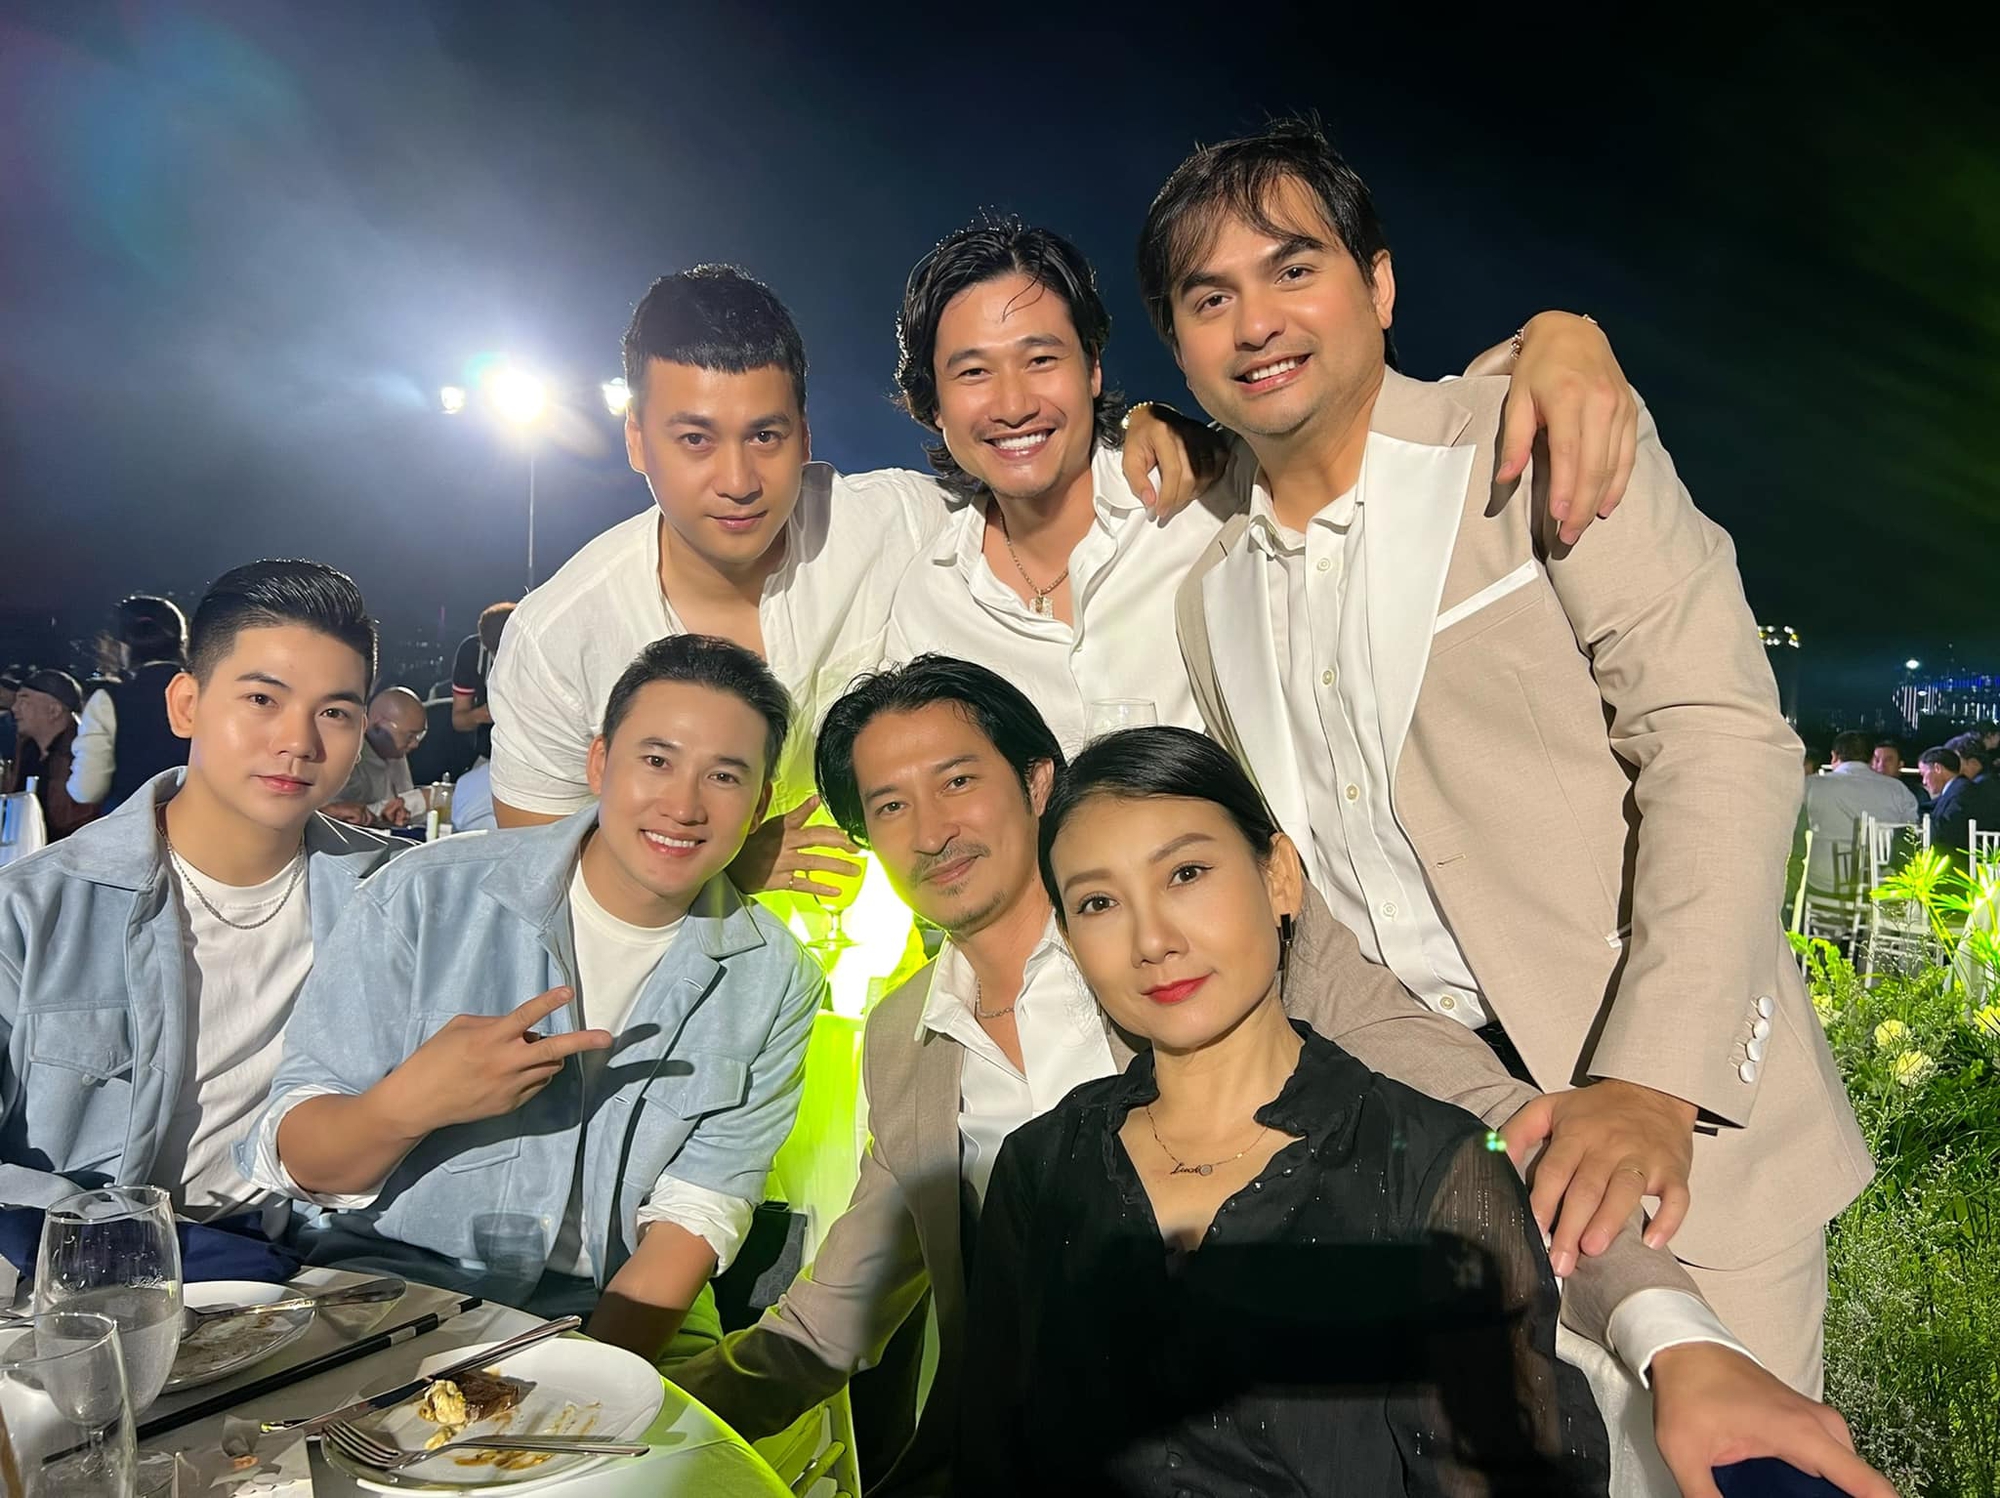 Hồng Vân, Lê Phương dự đám cưới của đạo diễn phim 'Gia đình hòa thuận' - Ảnh 5.